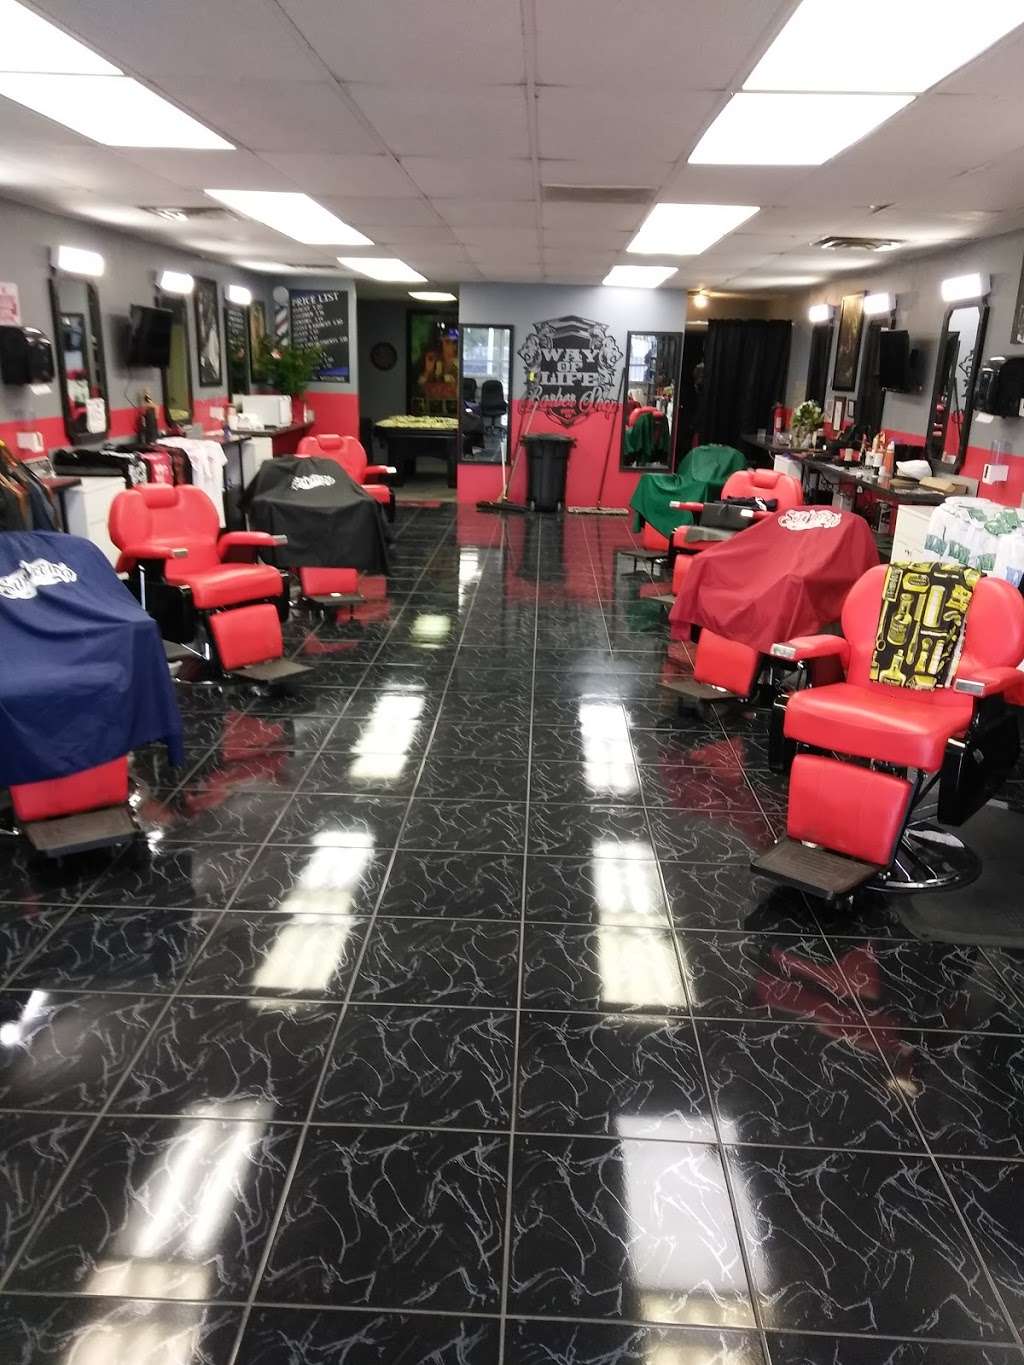 Way Of Life Barber Shop | 1000 N Nellis Blvd, Las Vegas, NV 89110, USA | Phone: (702) 531-8533